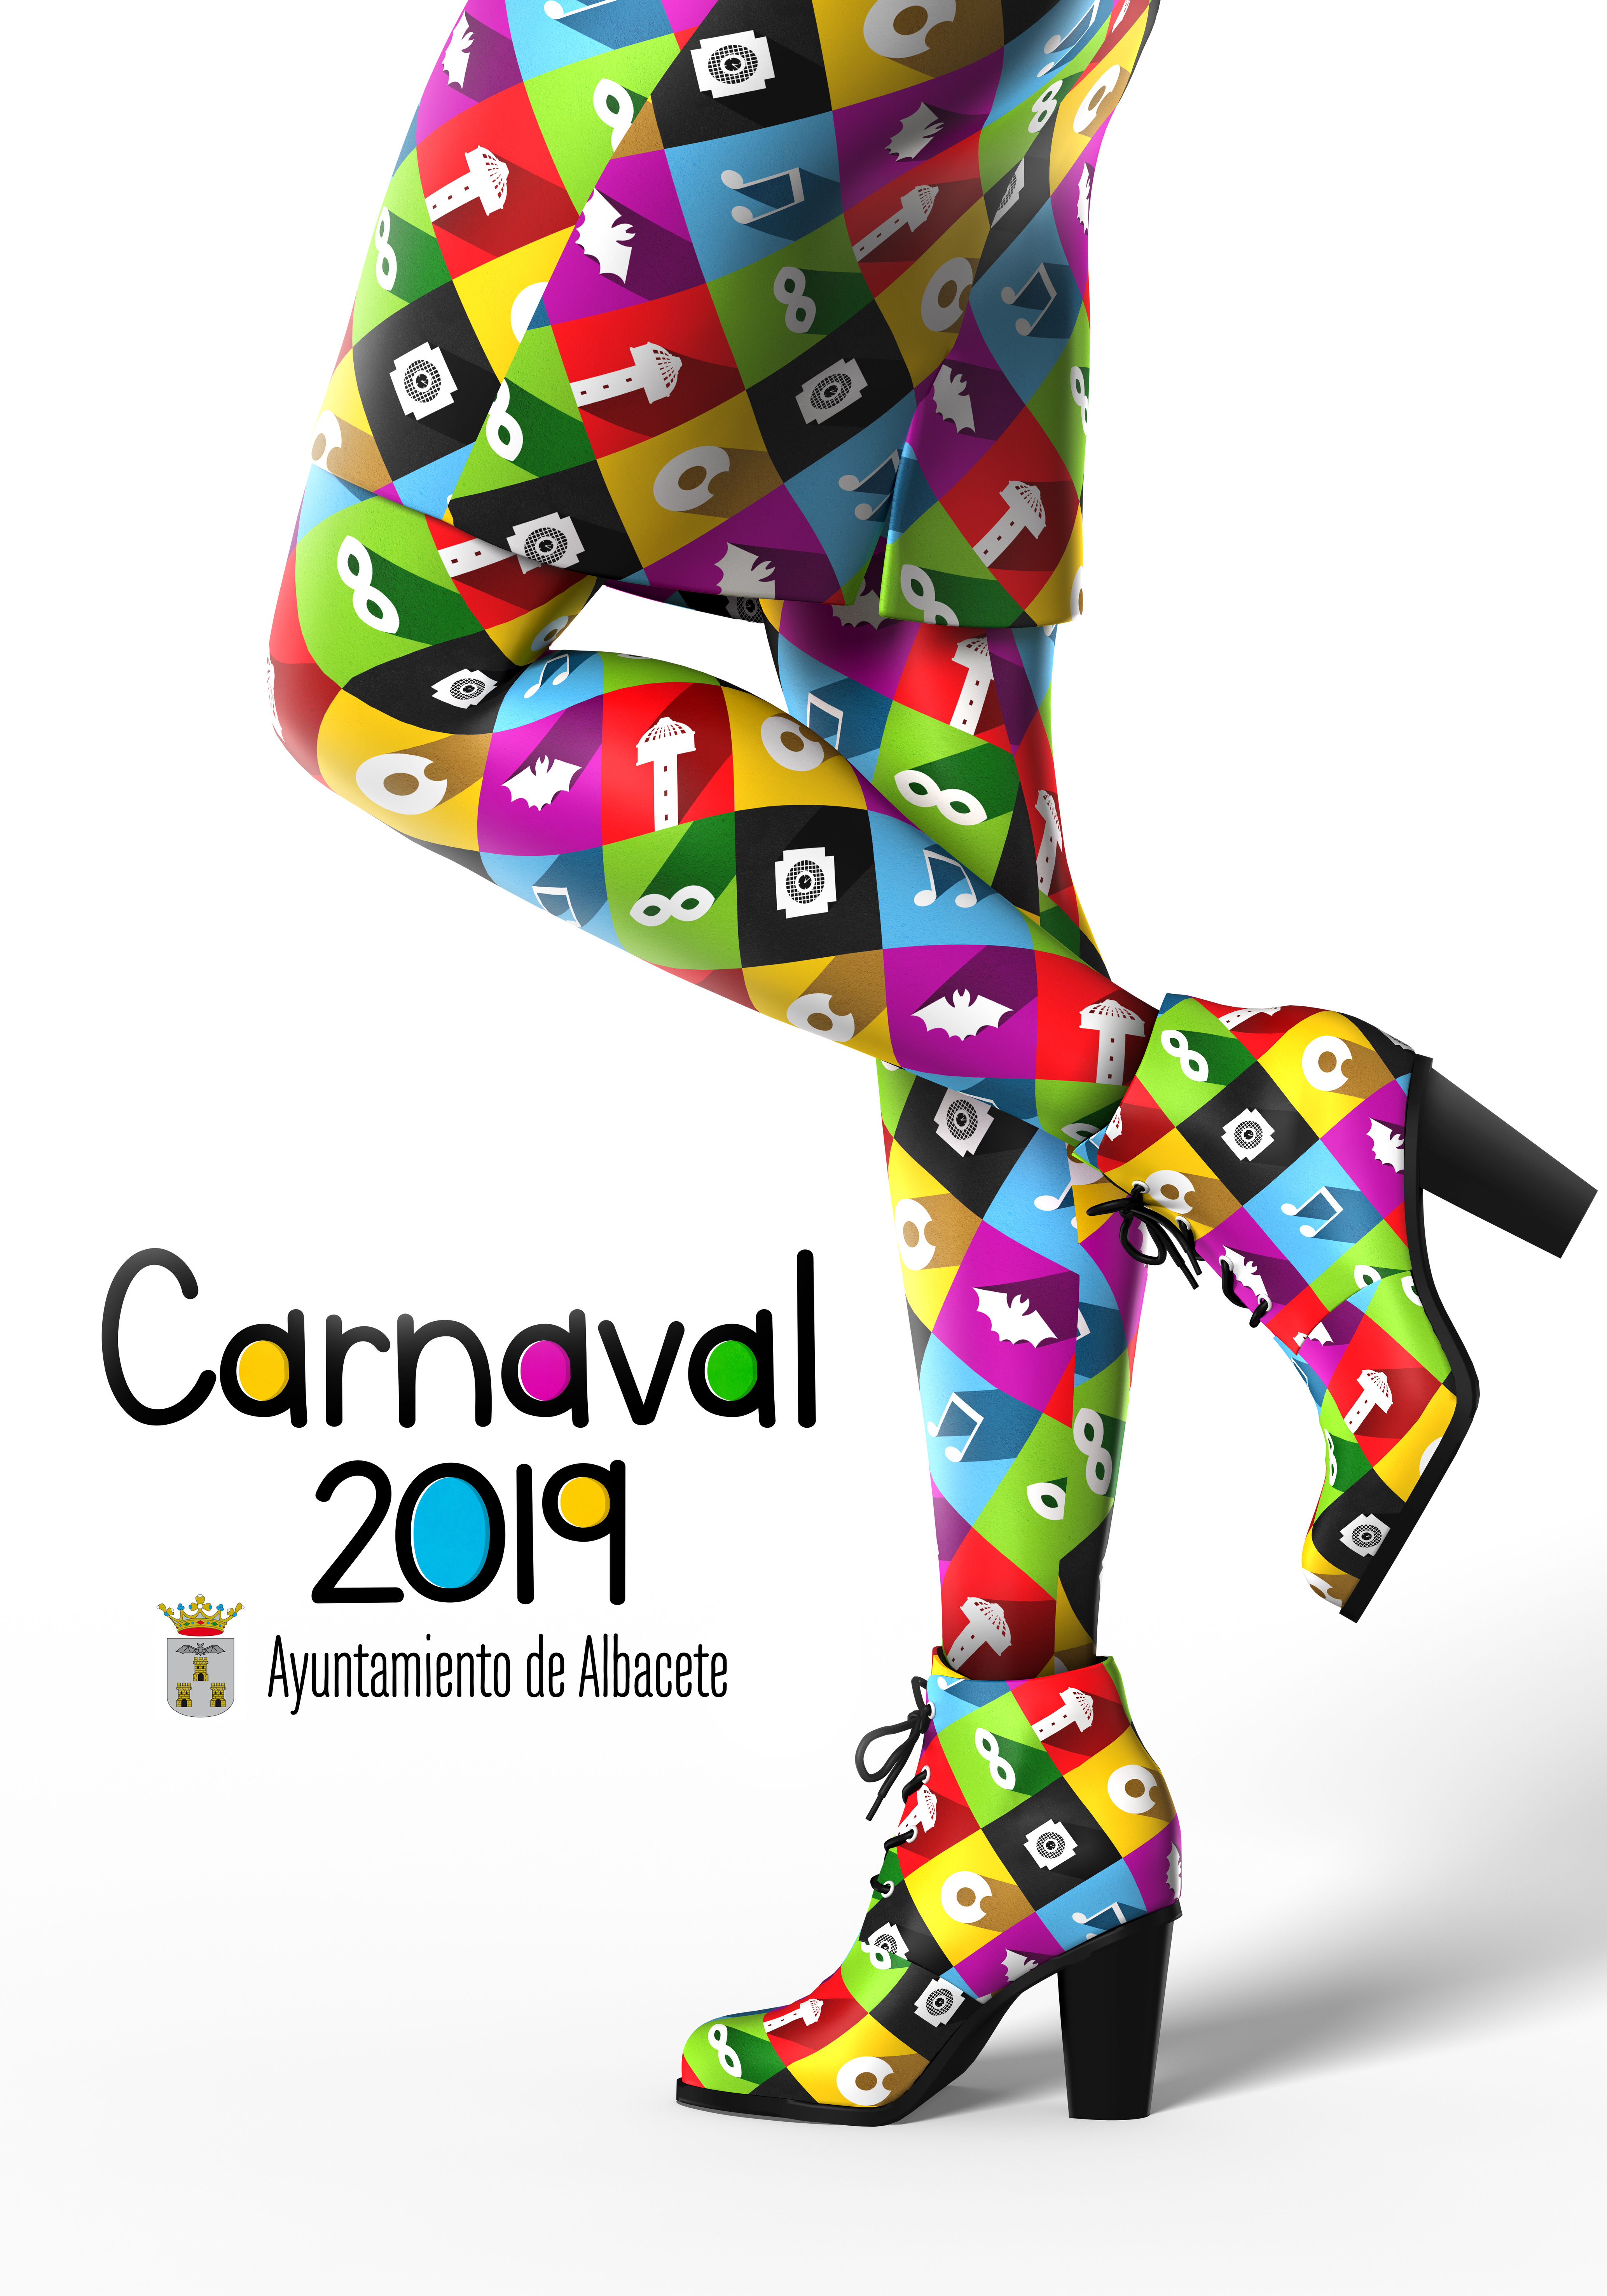 Así luce el cartel oficial del Carnaval 2019 de Albacete